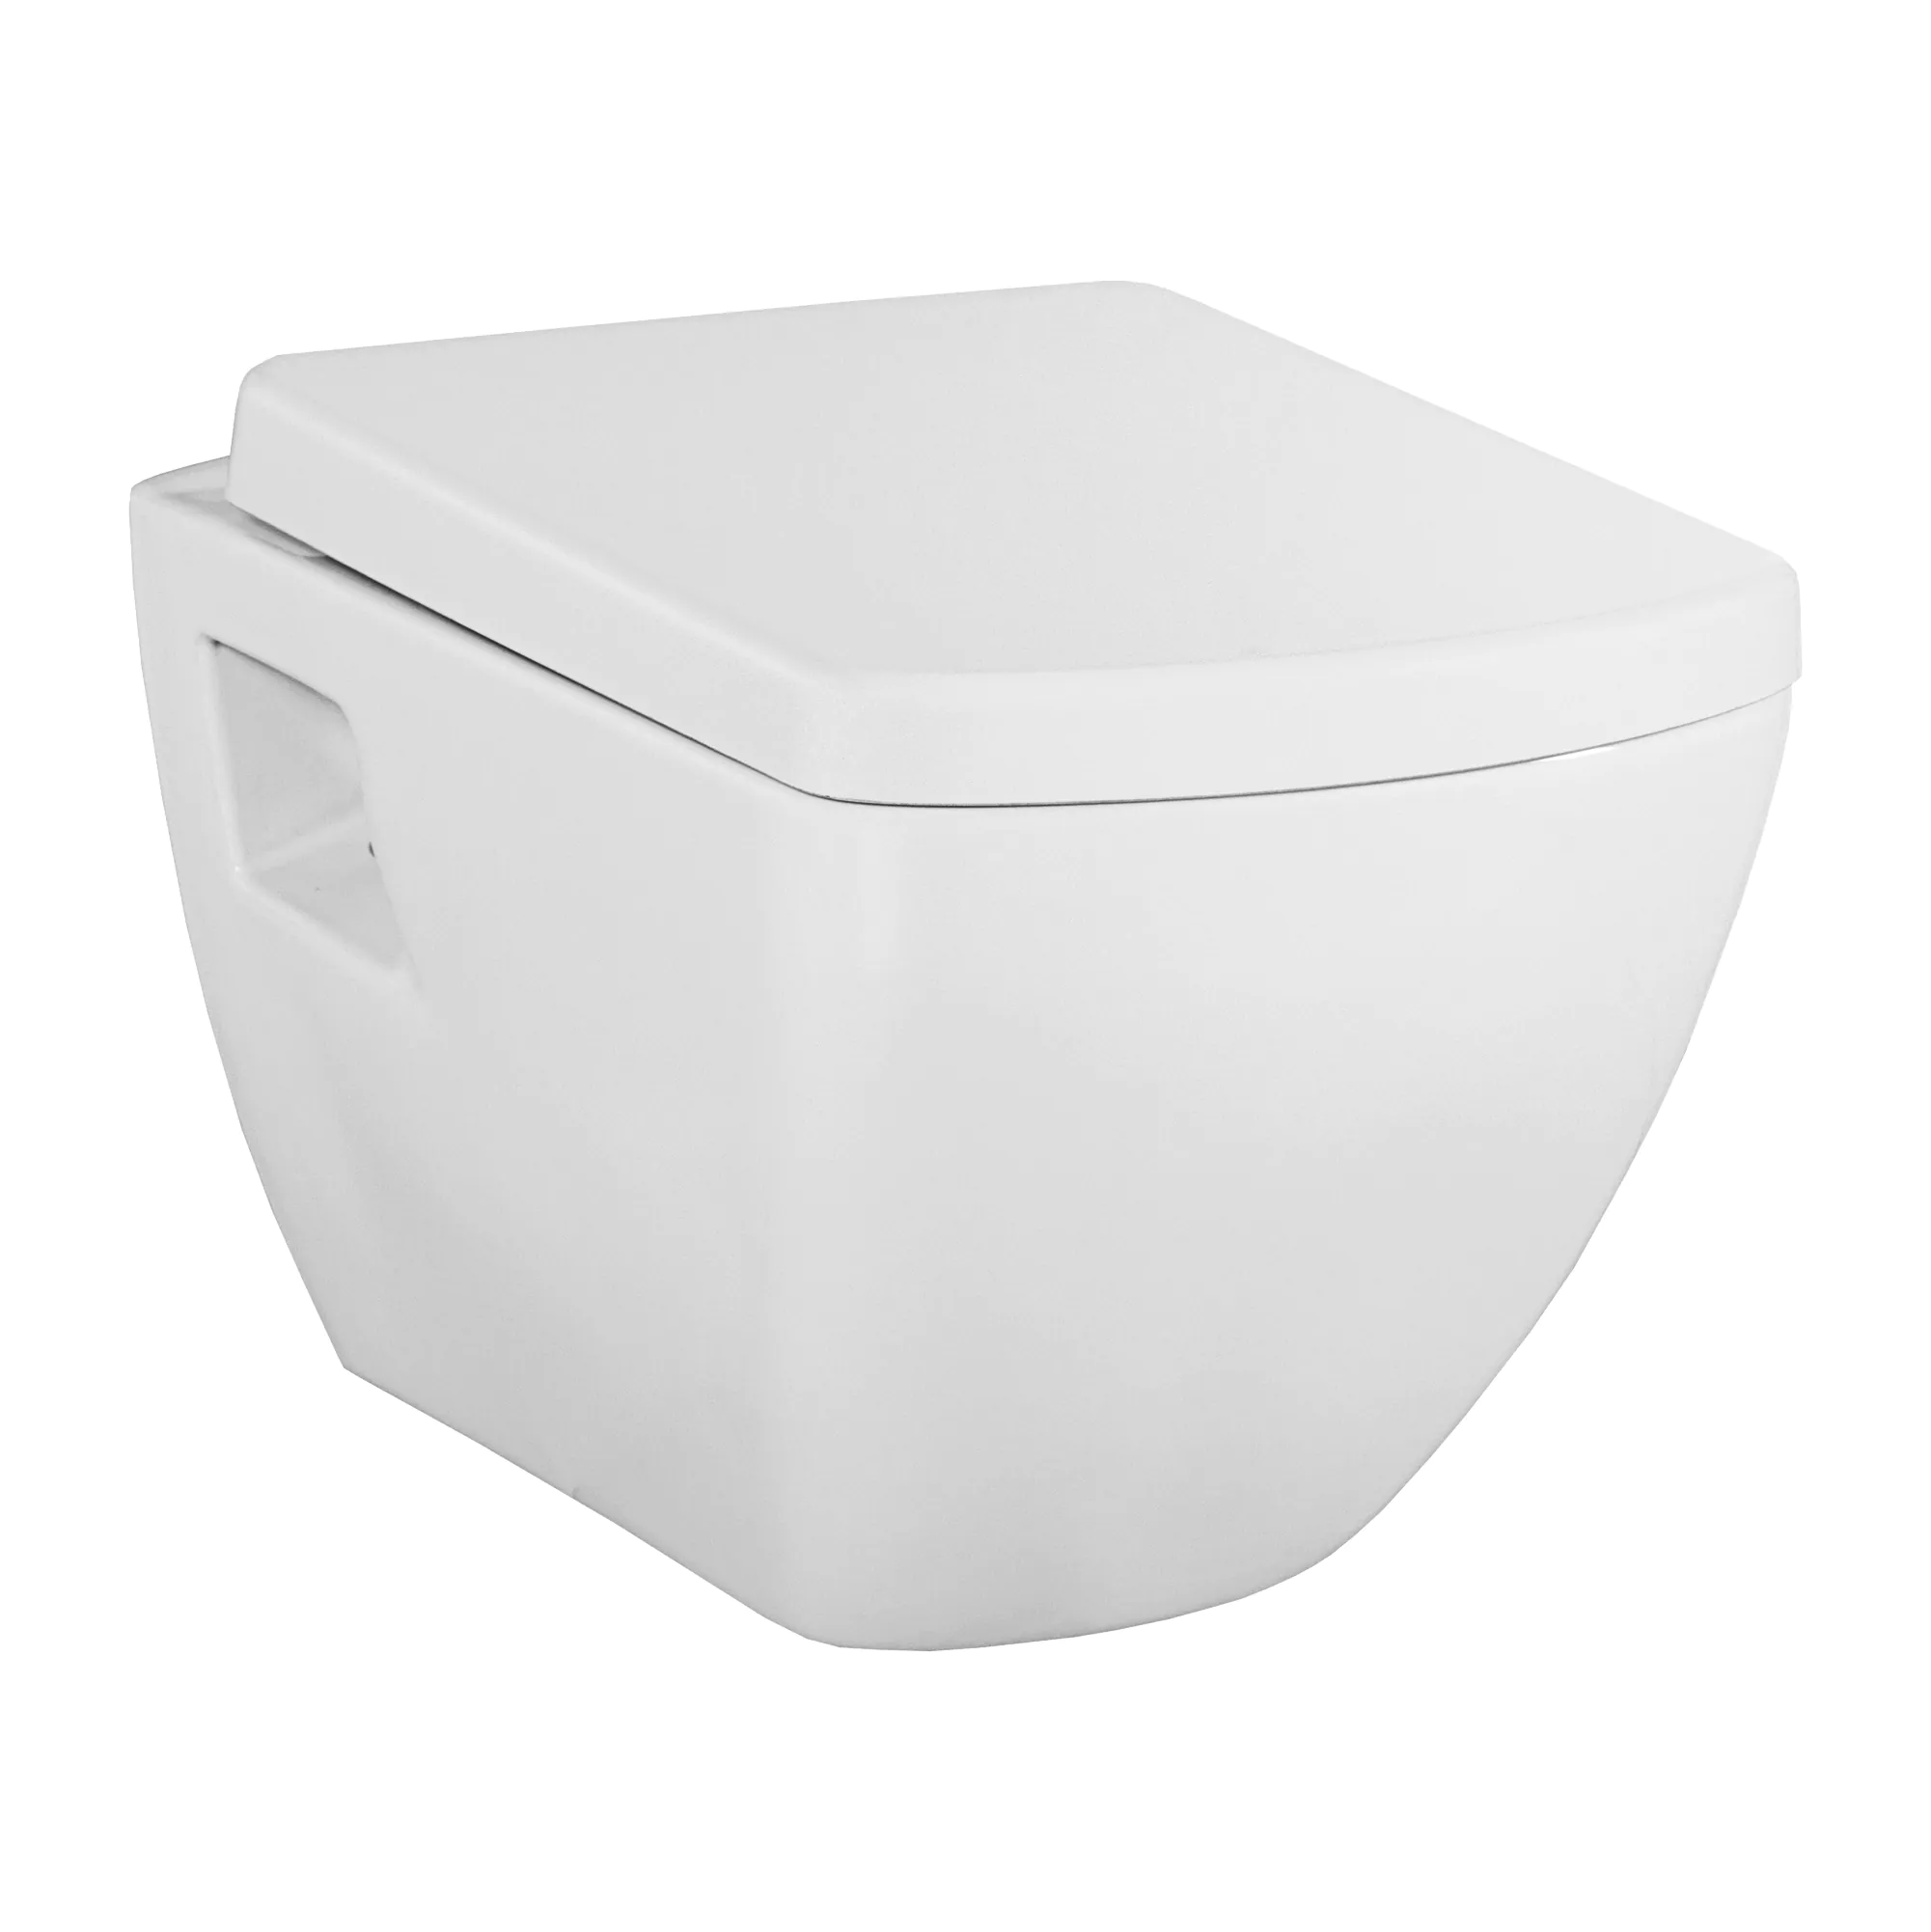 Neerduwen Eed oosters YDAY met spoelrand toilet - Met bidet wc RVS - Glans wit - exclusief  zitting - Badkamermeubel outlet